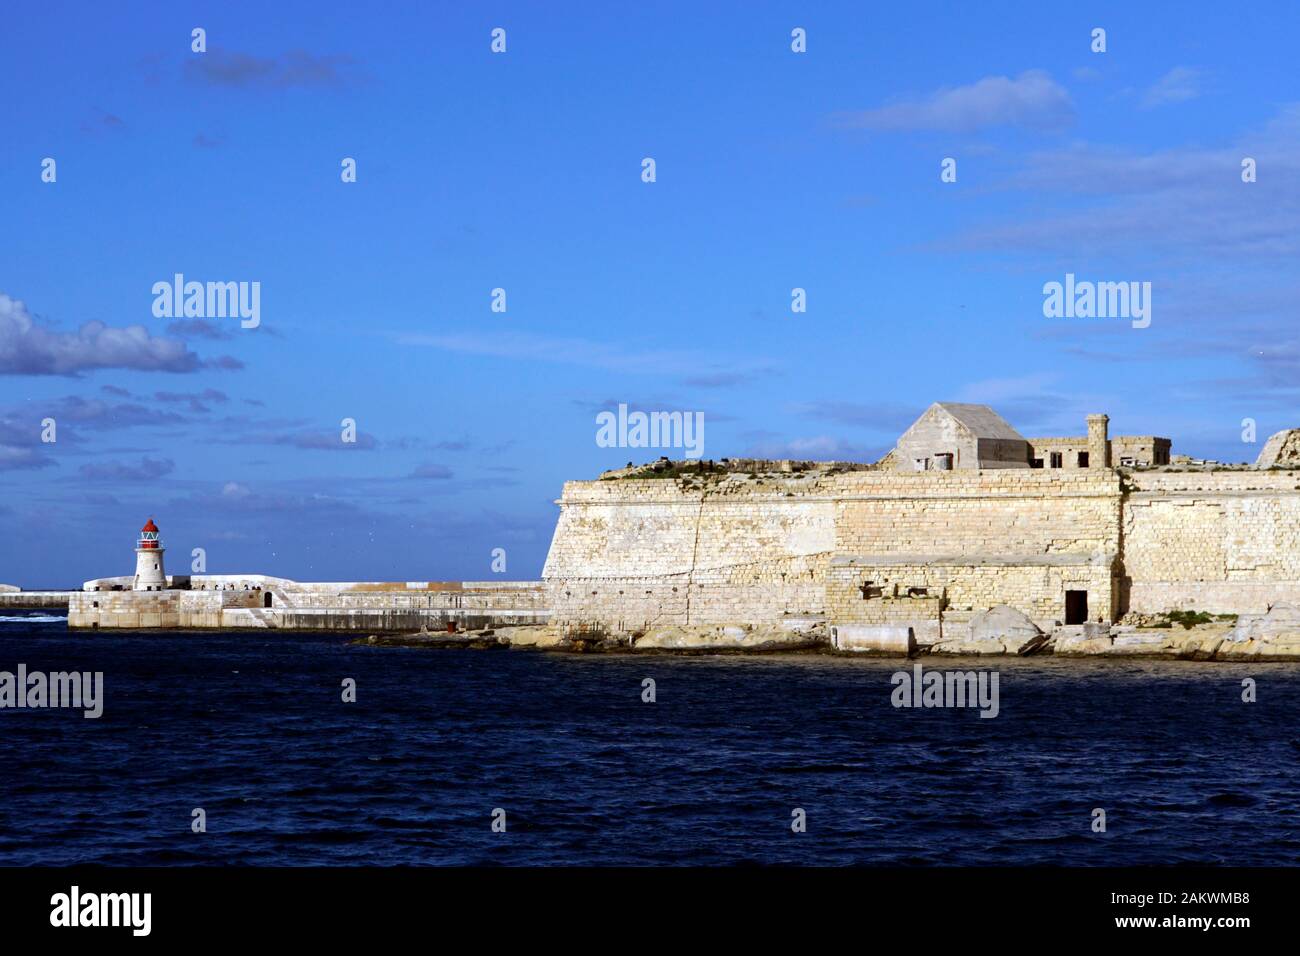 Hafenrundfahrt durch den Grand Harbour - Fort Ricasoli mit Leuchtturm an der Hafeneinfahrt, Kalkara, Malta Stockfoto